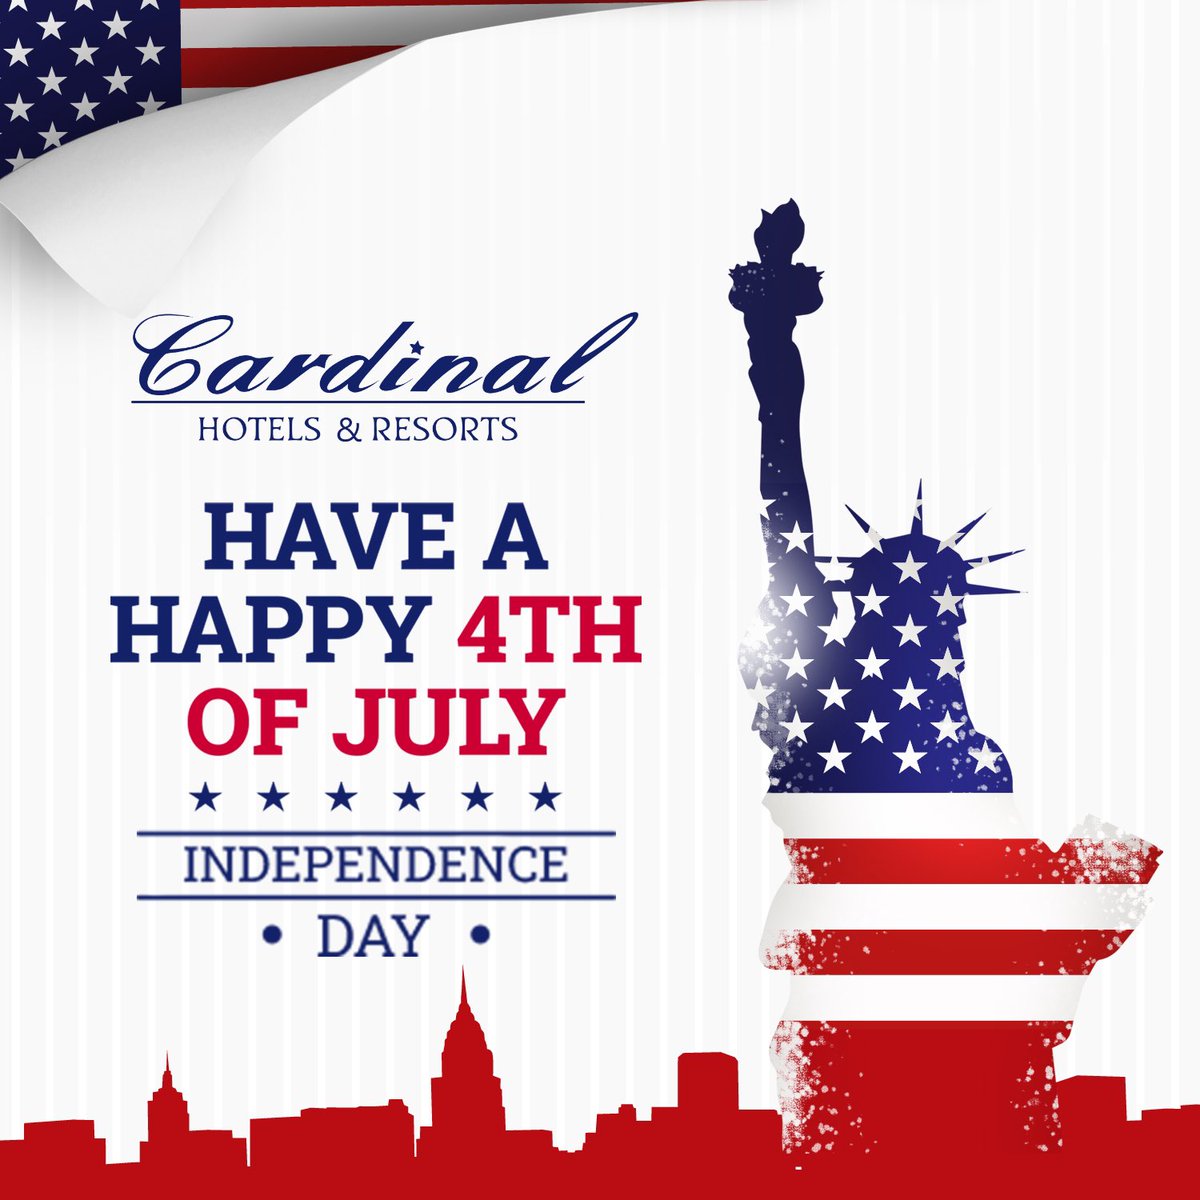 Happy 4th of July - Independence Day #cardinalhotels #hotels #USA #hotelgroup #hotelmarketing #hotelfranchise #hotelbrand #hotelmanagement #hotelsandresorts #hotelindustry #hotelsandmotels